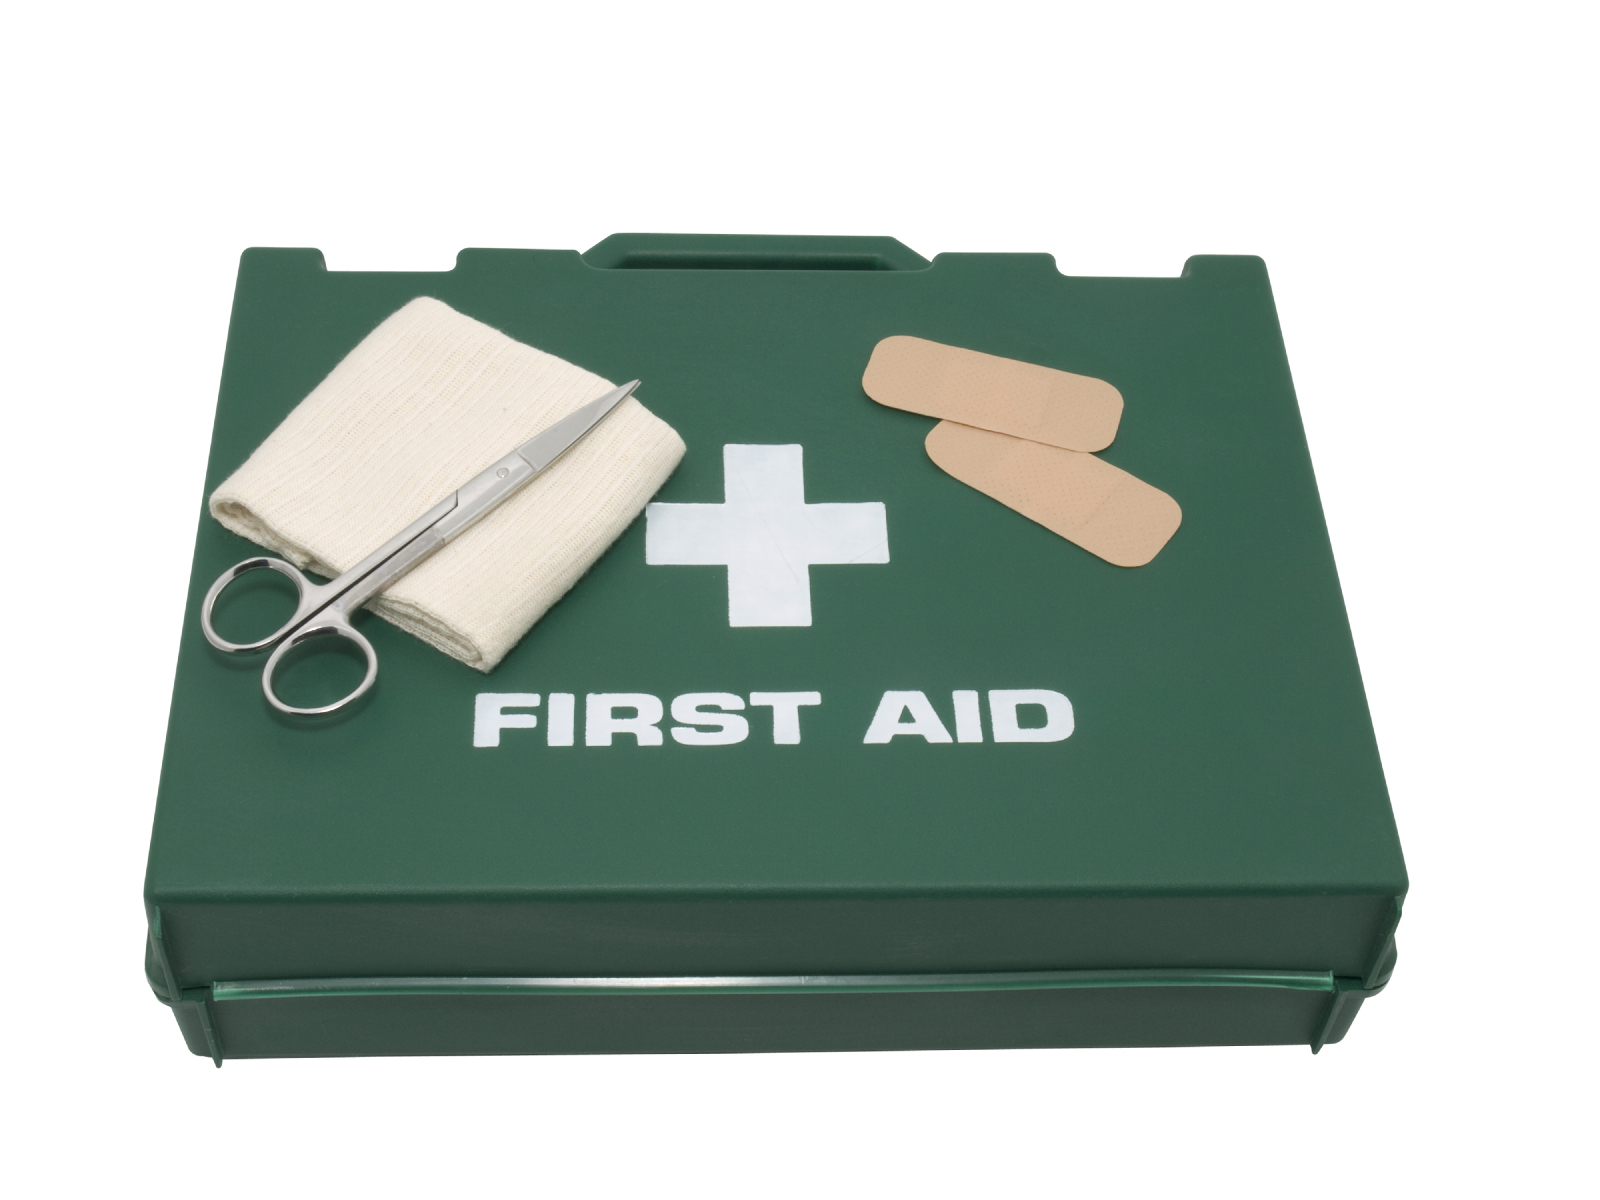 a first aid box